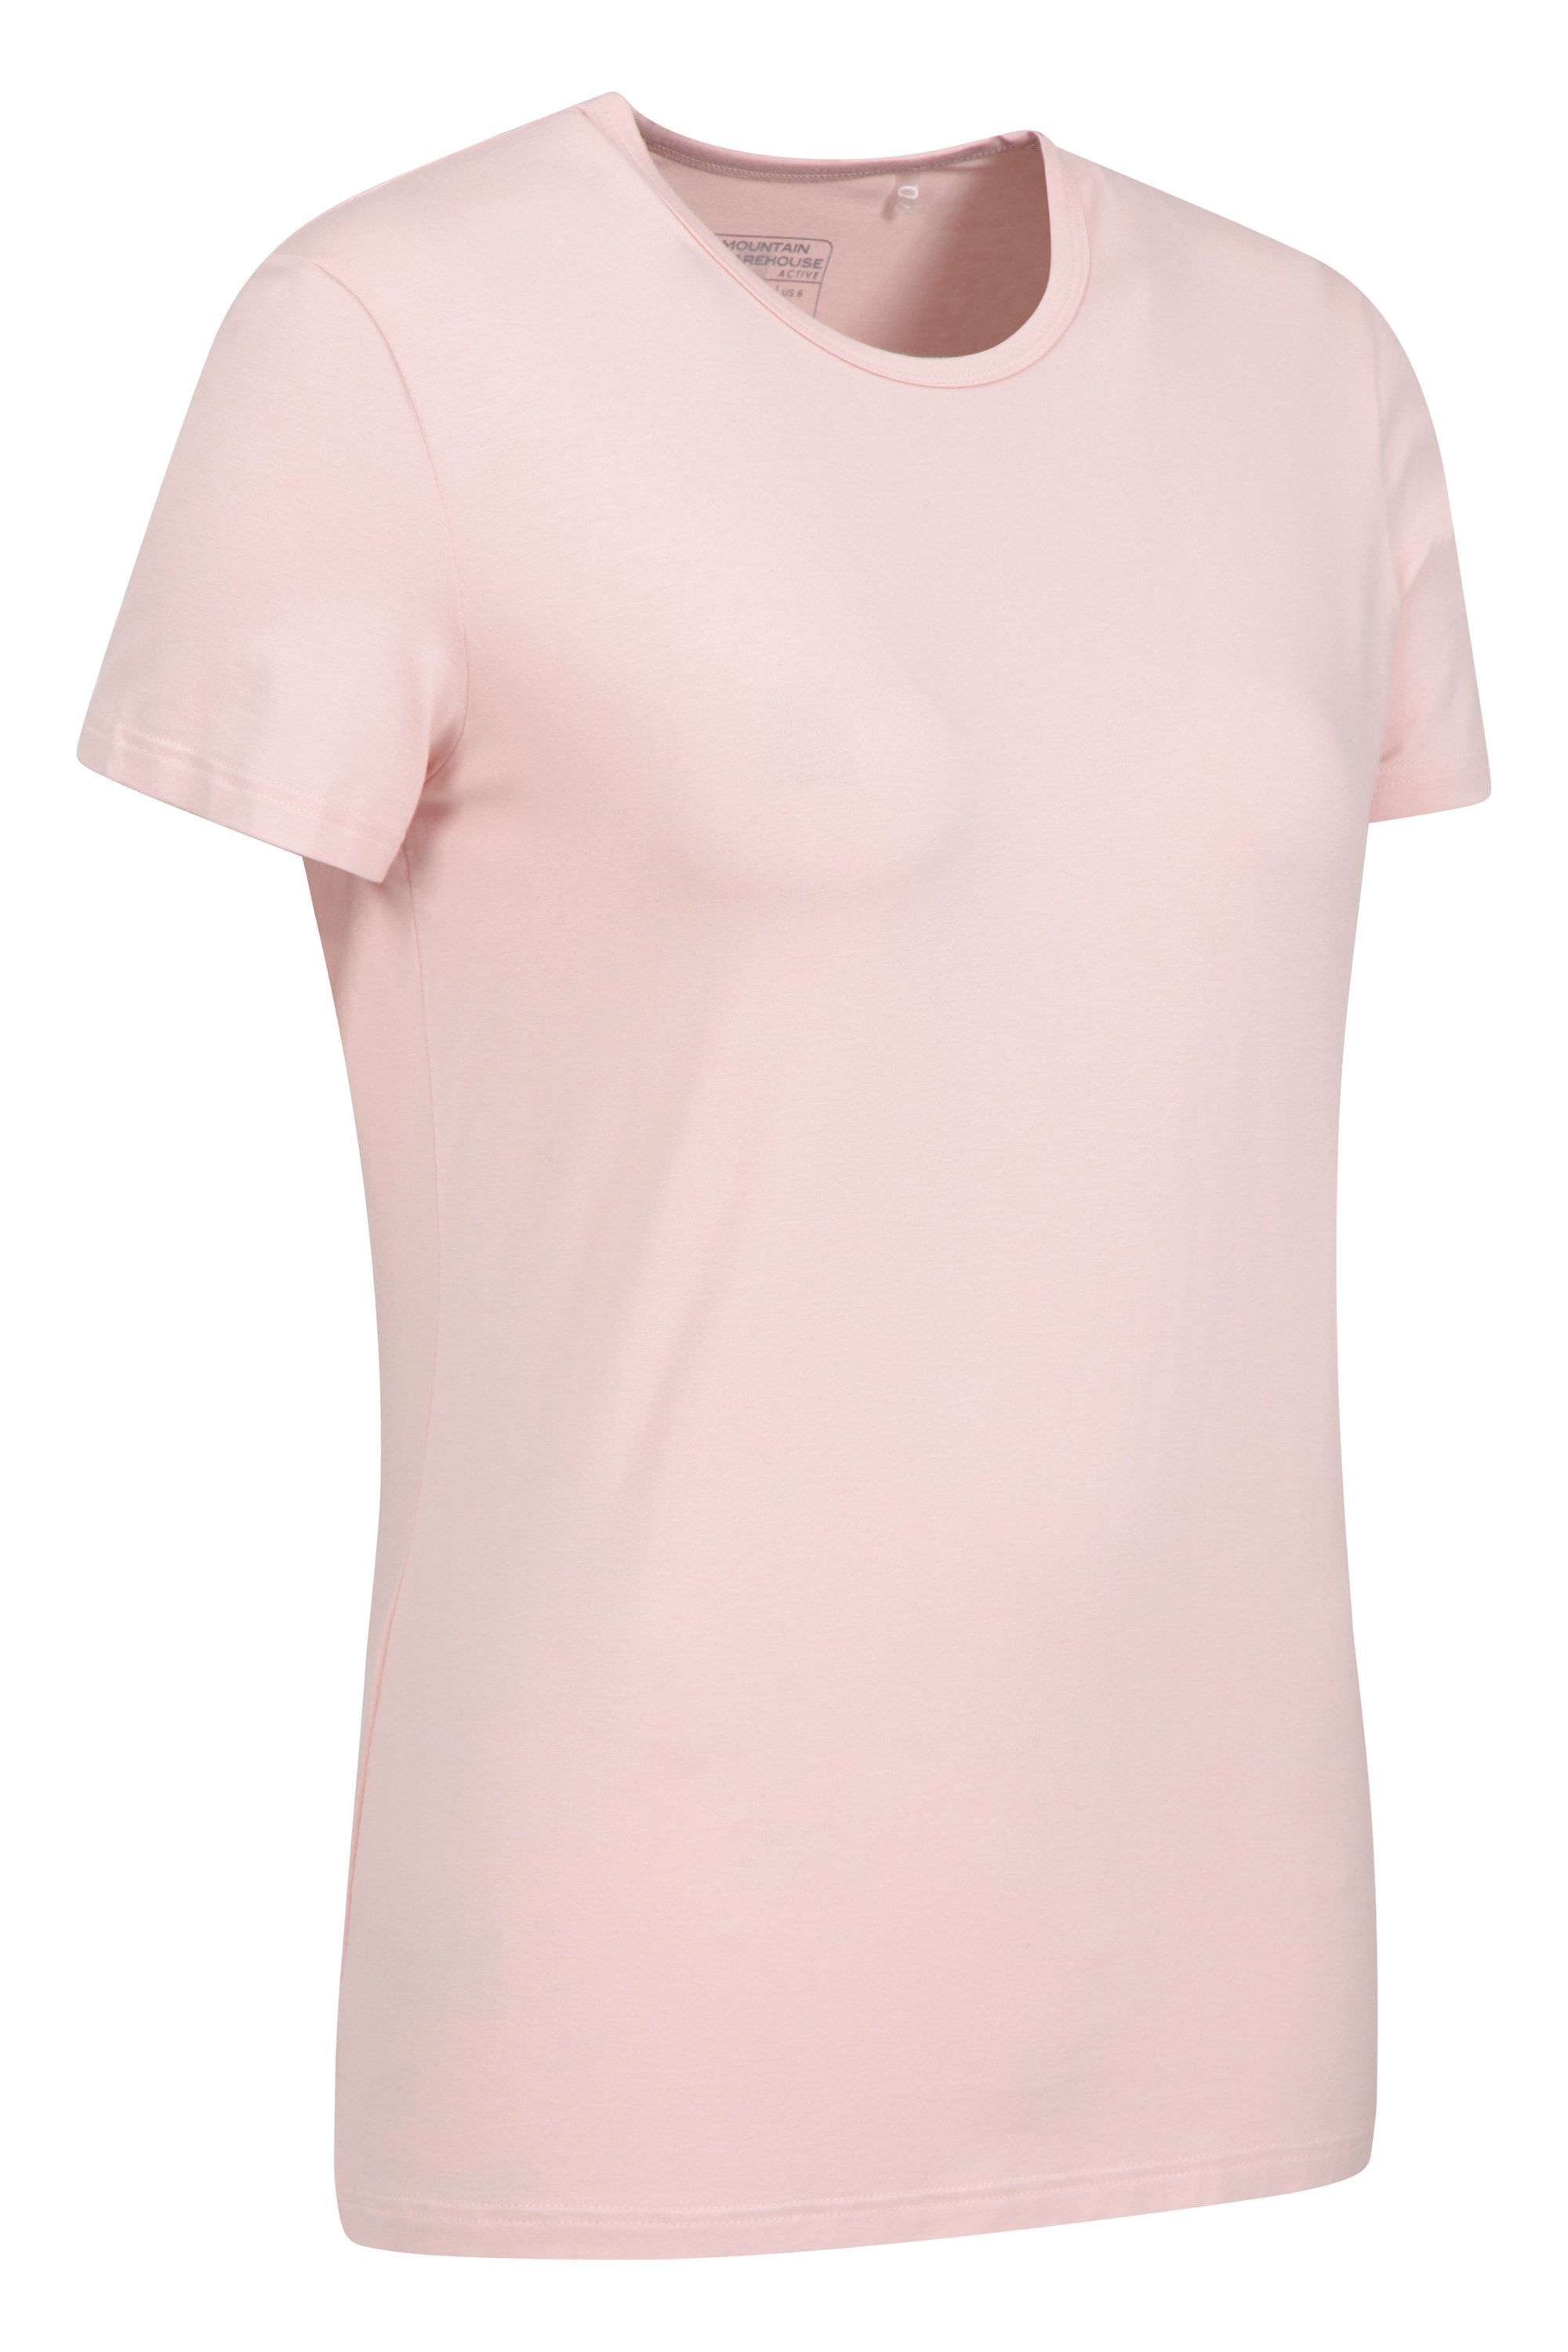 MD Women's Bamboo Seamless T-Shirt Scoop Neck Short Sleeve Comfort